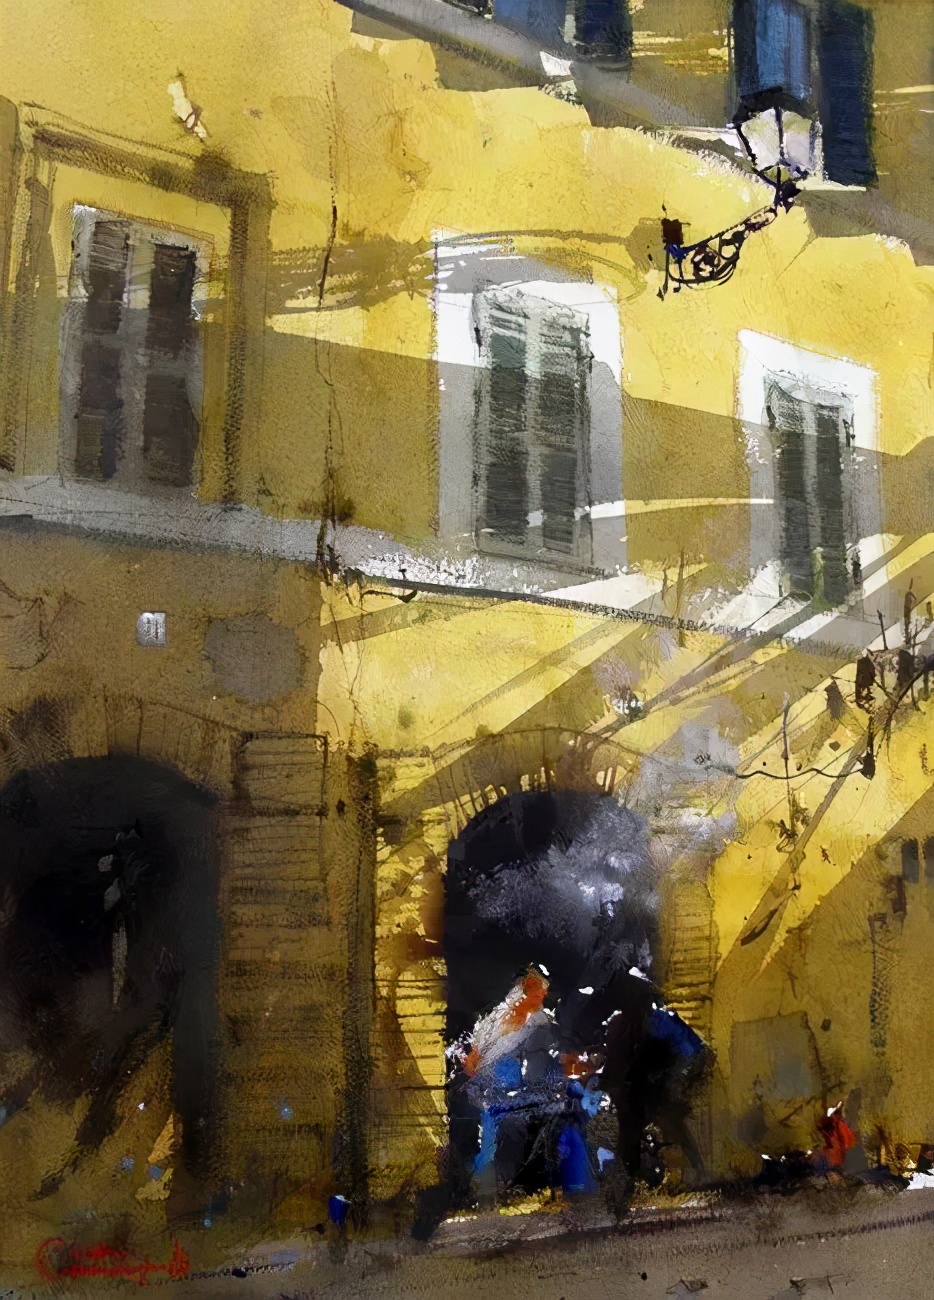 意大利画家罗伯托 畅快淋漓的水彩风景画 